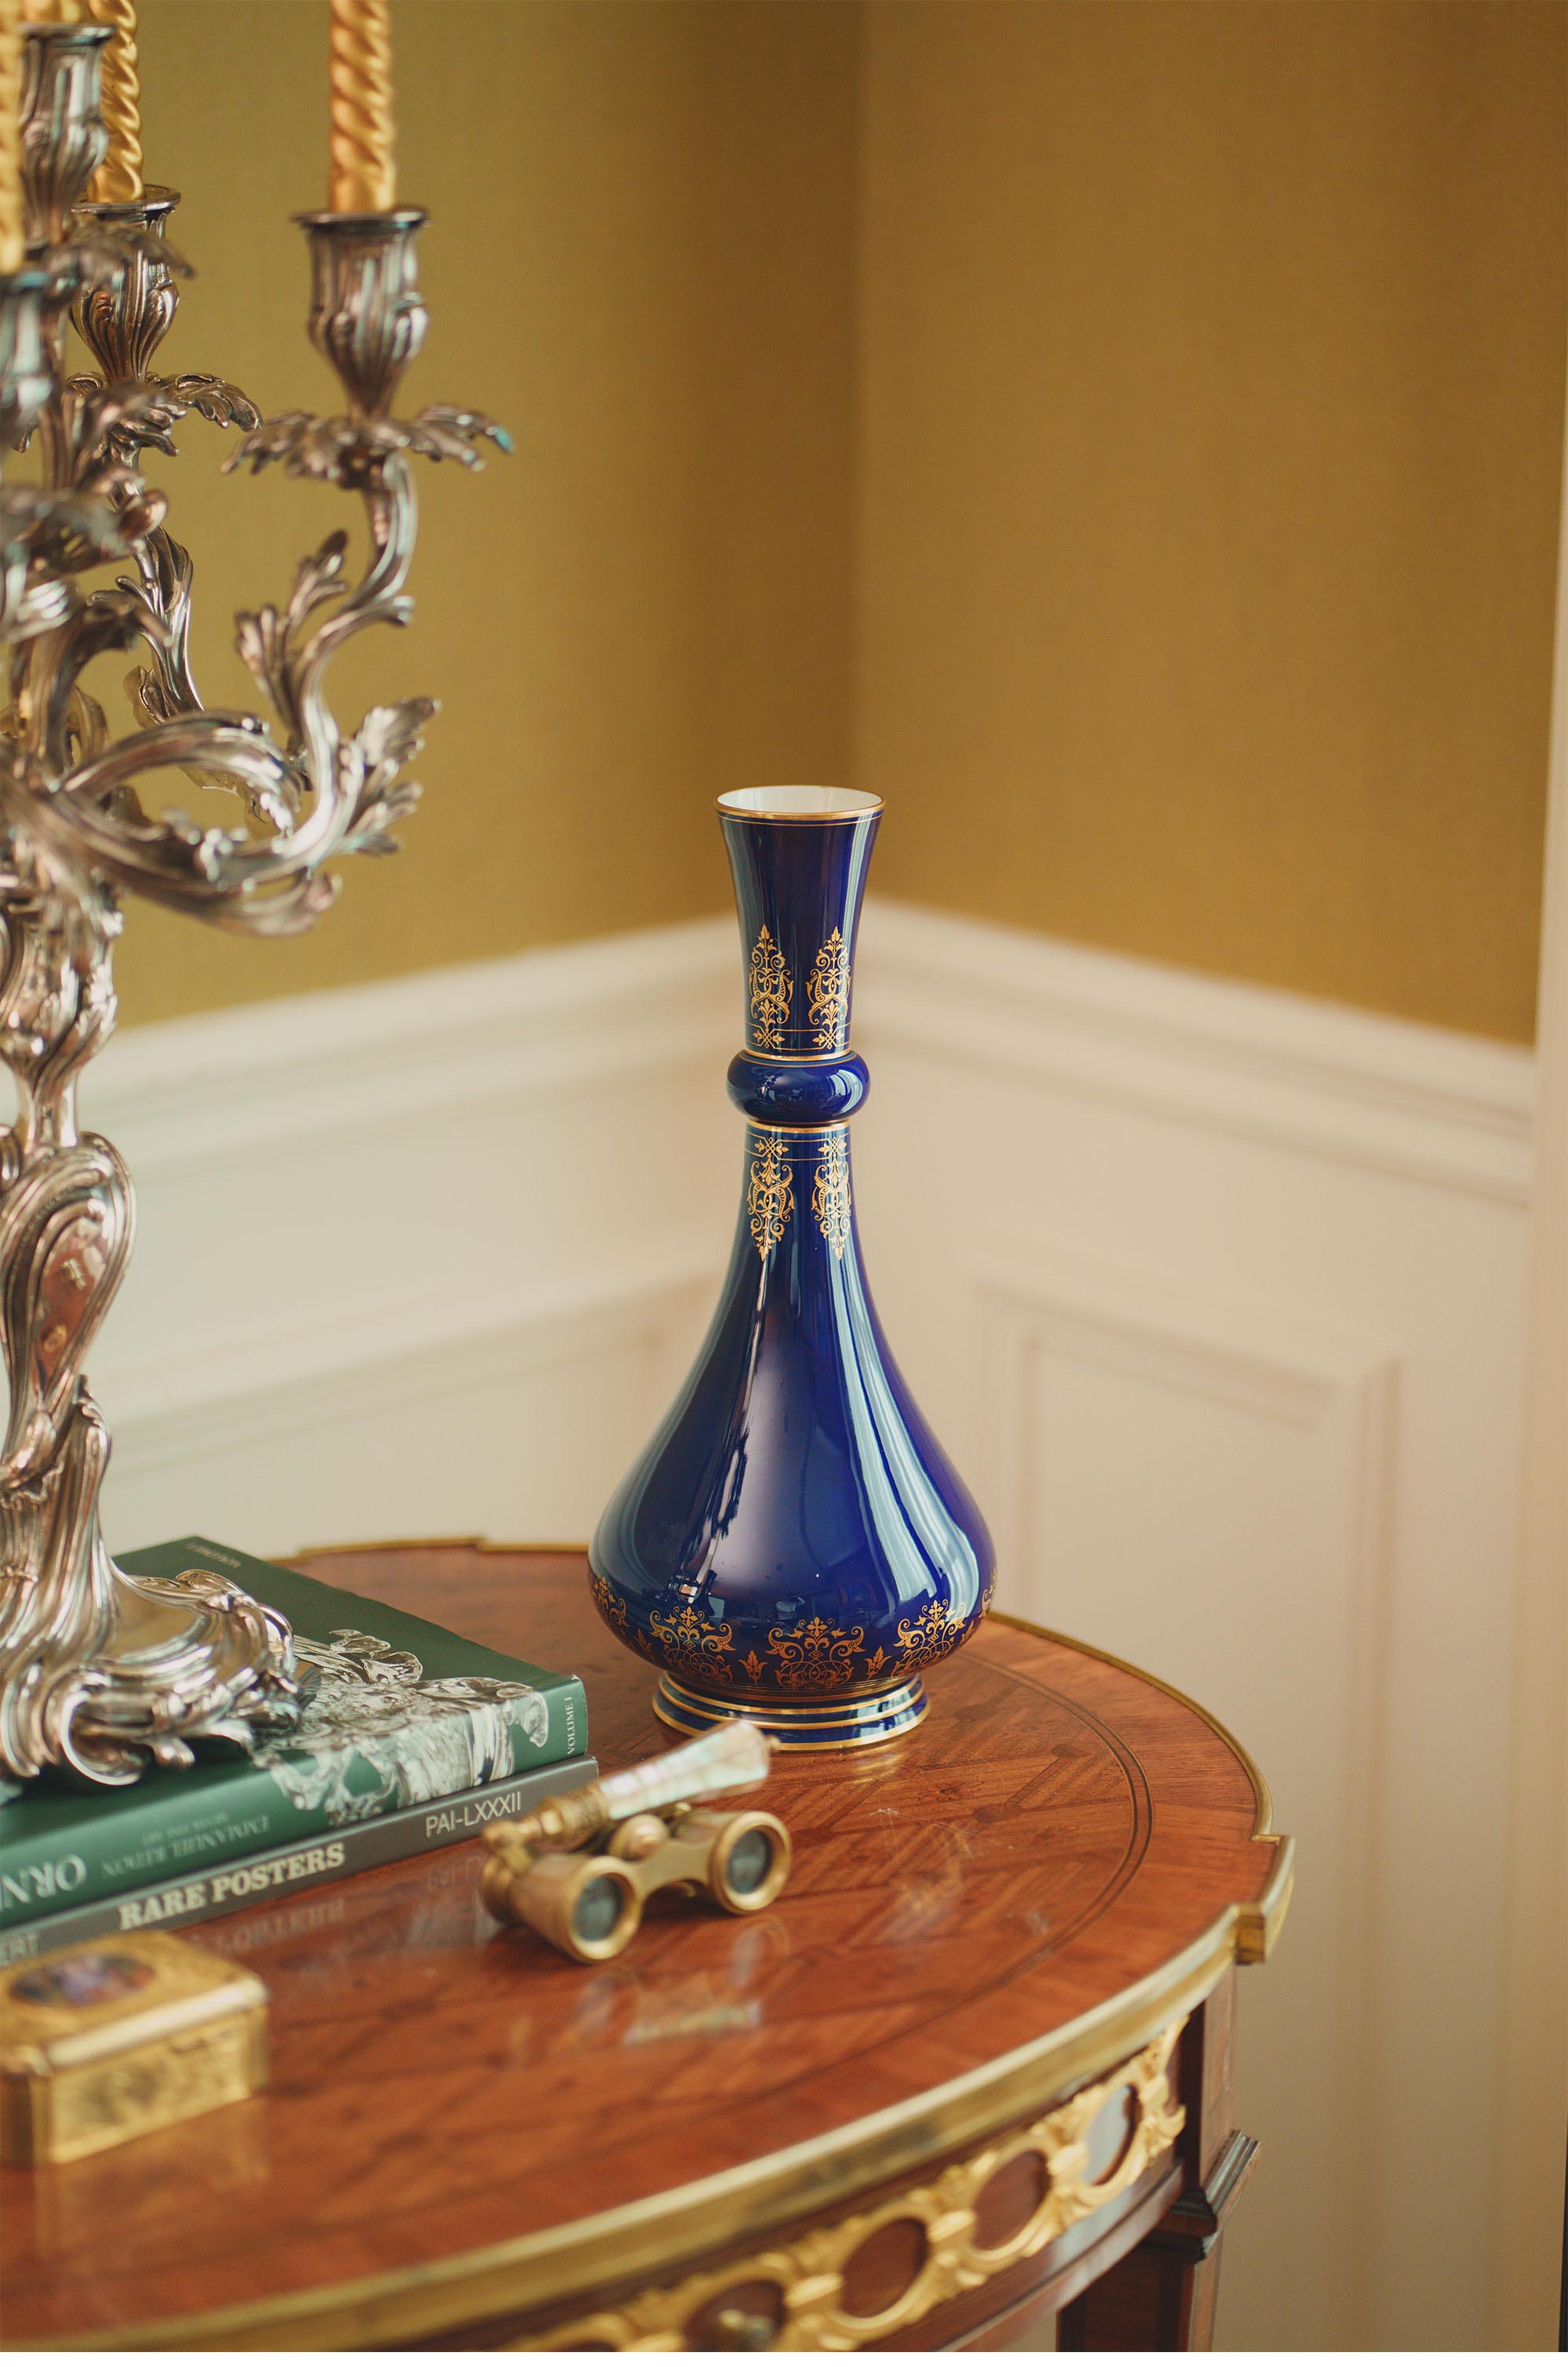 独角鹿西洋古董1884年代法国御窑塞弗尔签名出品帝王蓝釉手绘描金瓷瓶一对